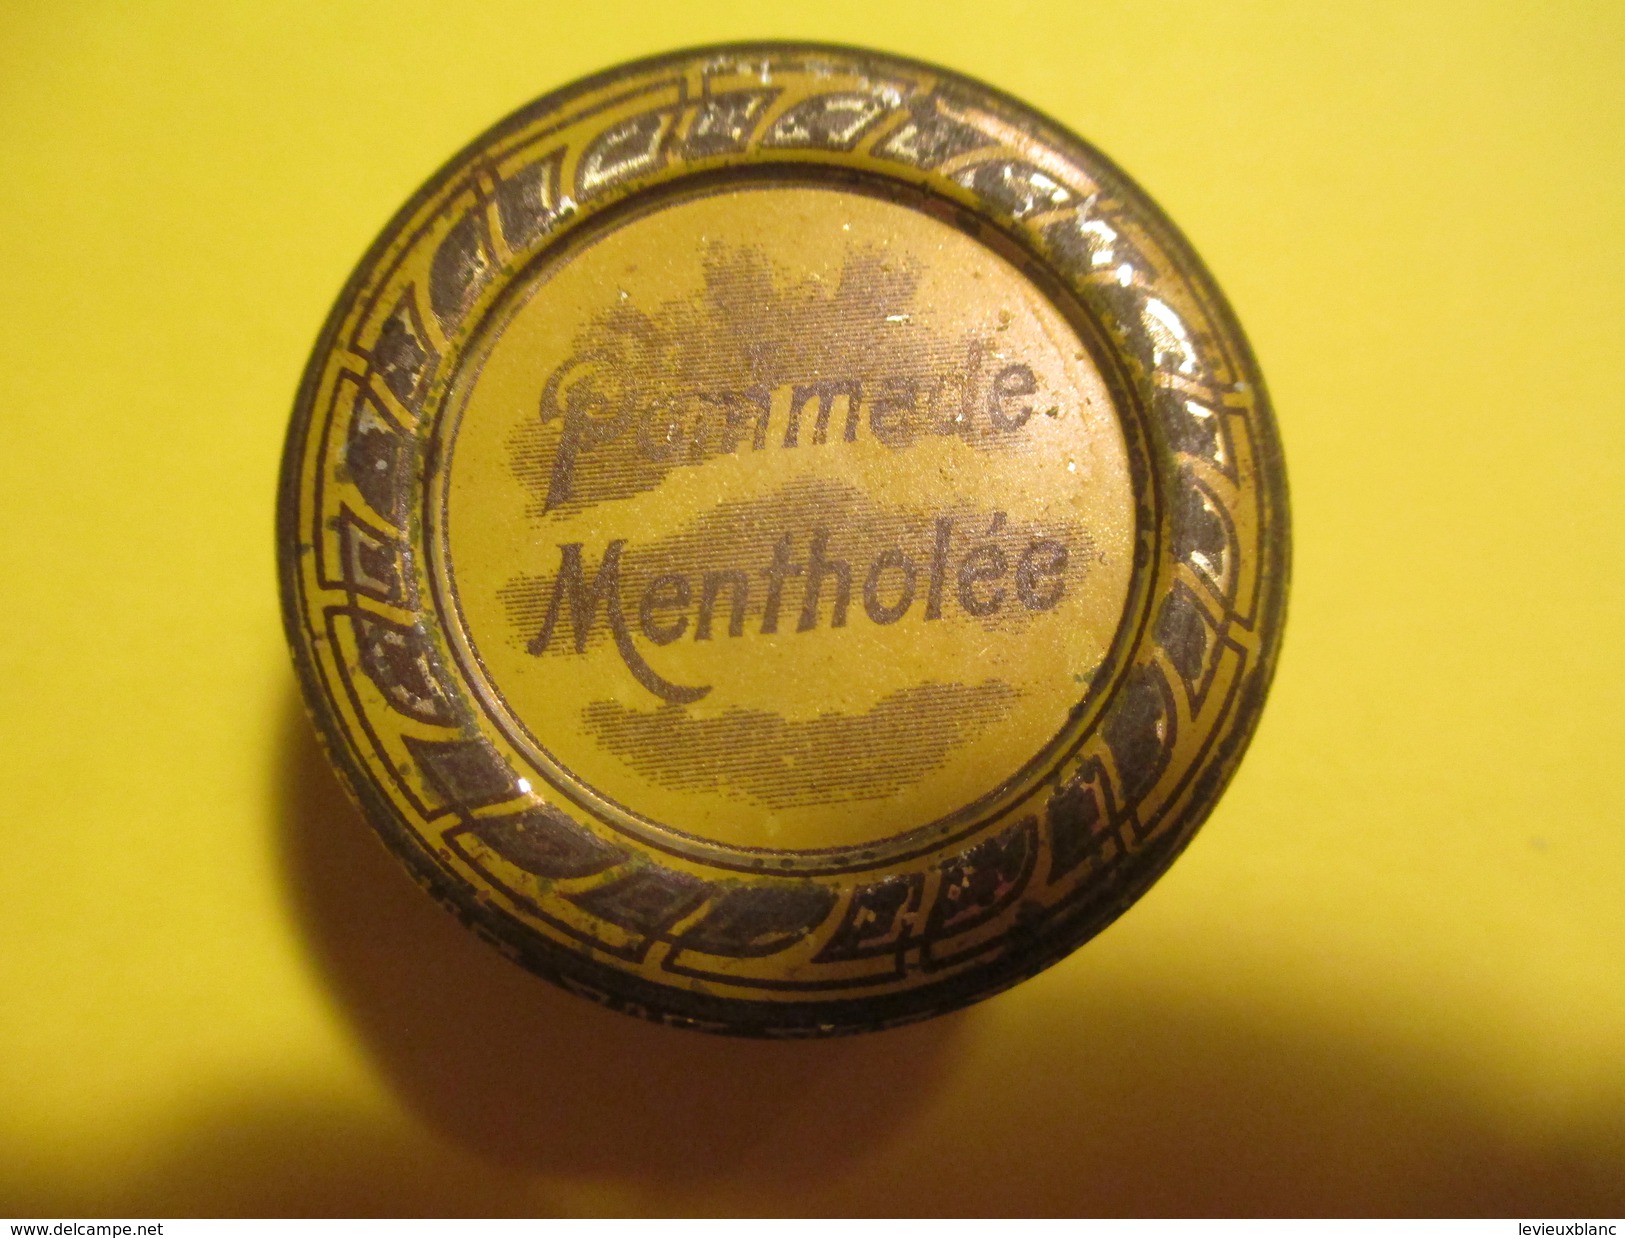 4 Boites Métalliques/Pharma/Pommade Mentholée/Pom.oxydée Zinc/Vaseline Chimiqt Pure/Vas.Boriquée/Vers 1920-1930?  BFPP95 - Boîtes